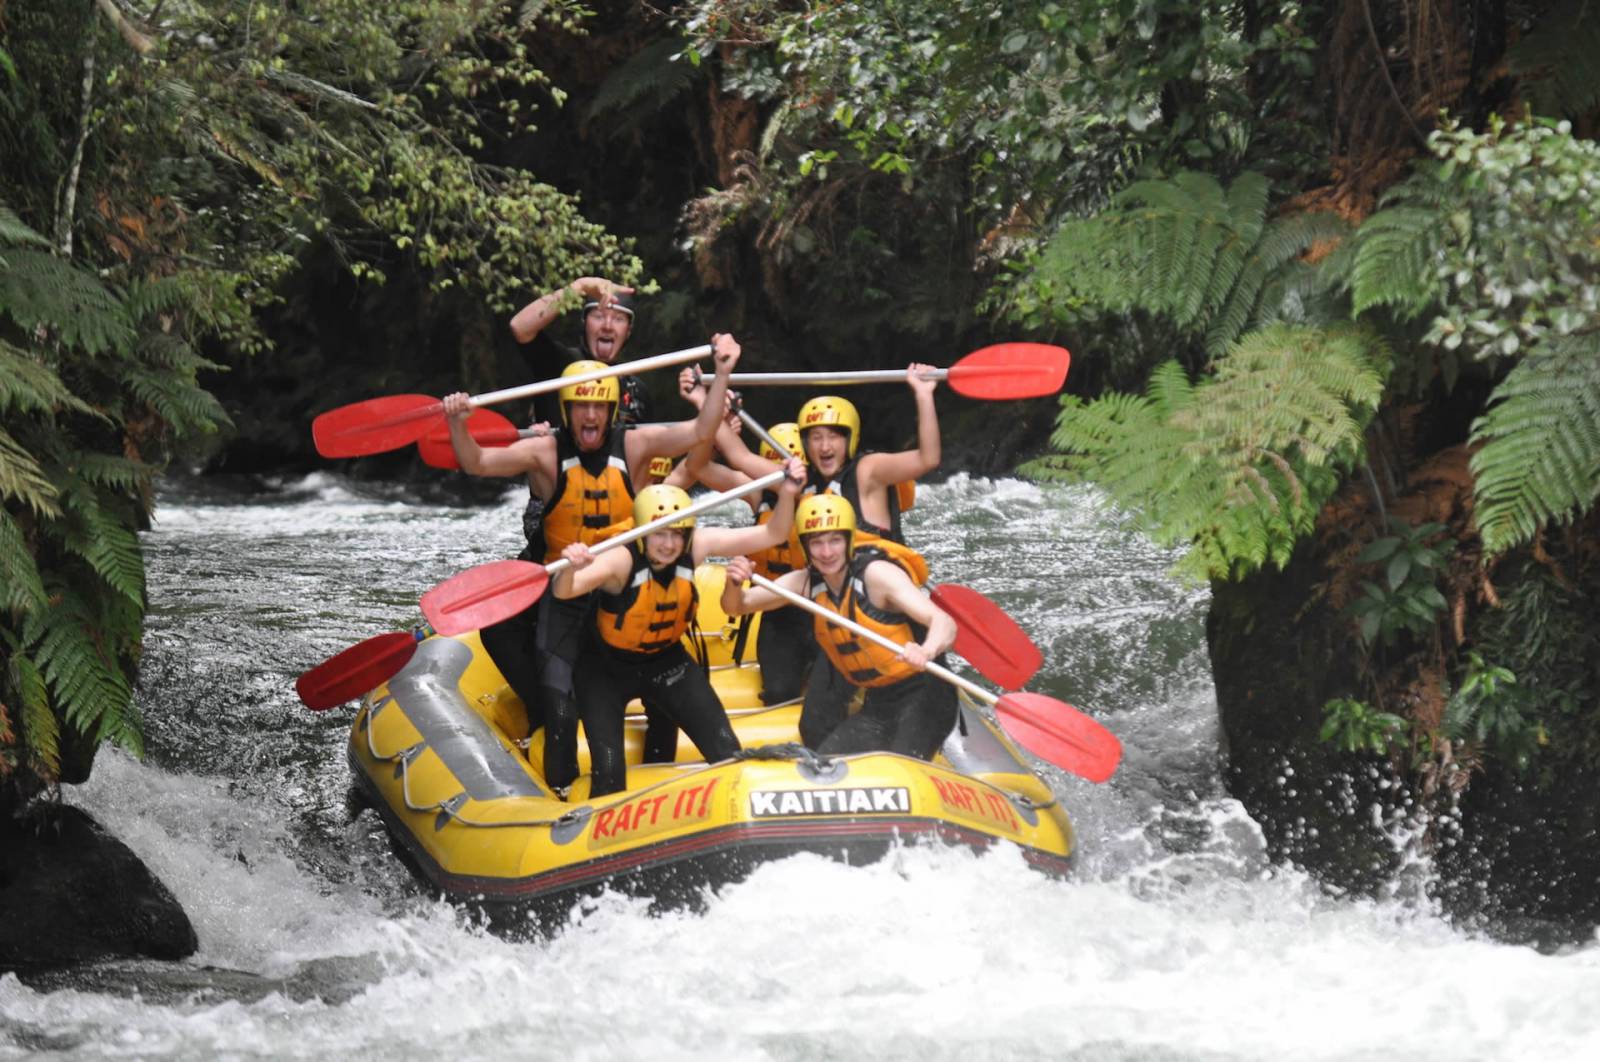 Kaitiaki white water rafting in New Zealand rapids